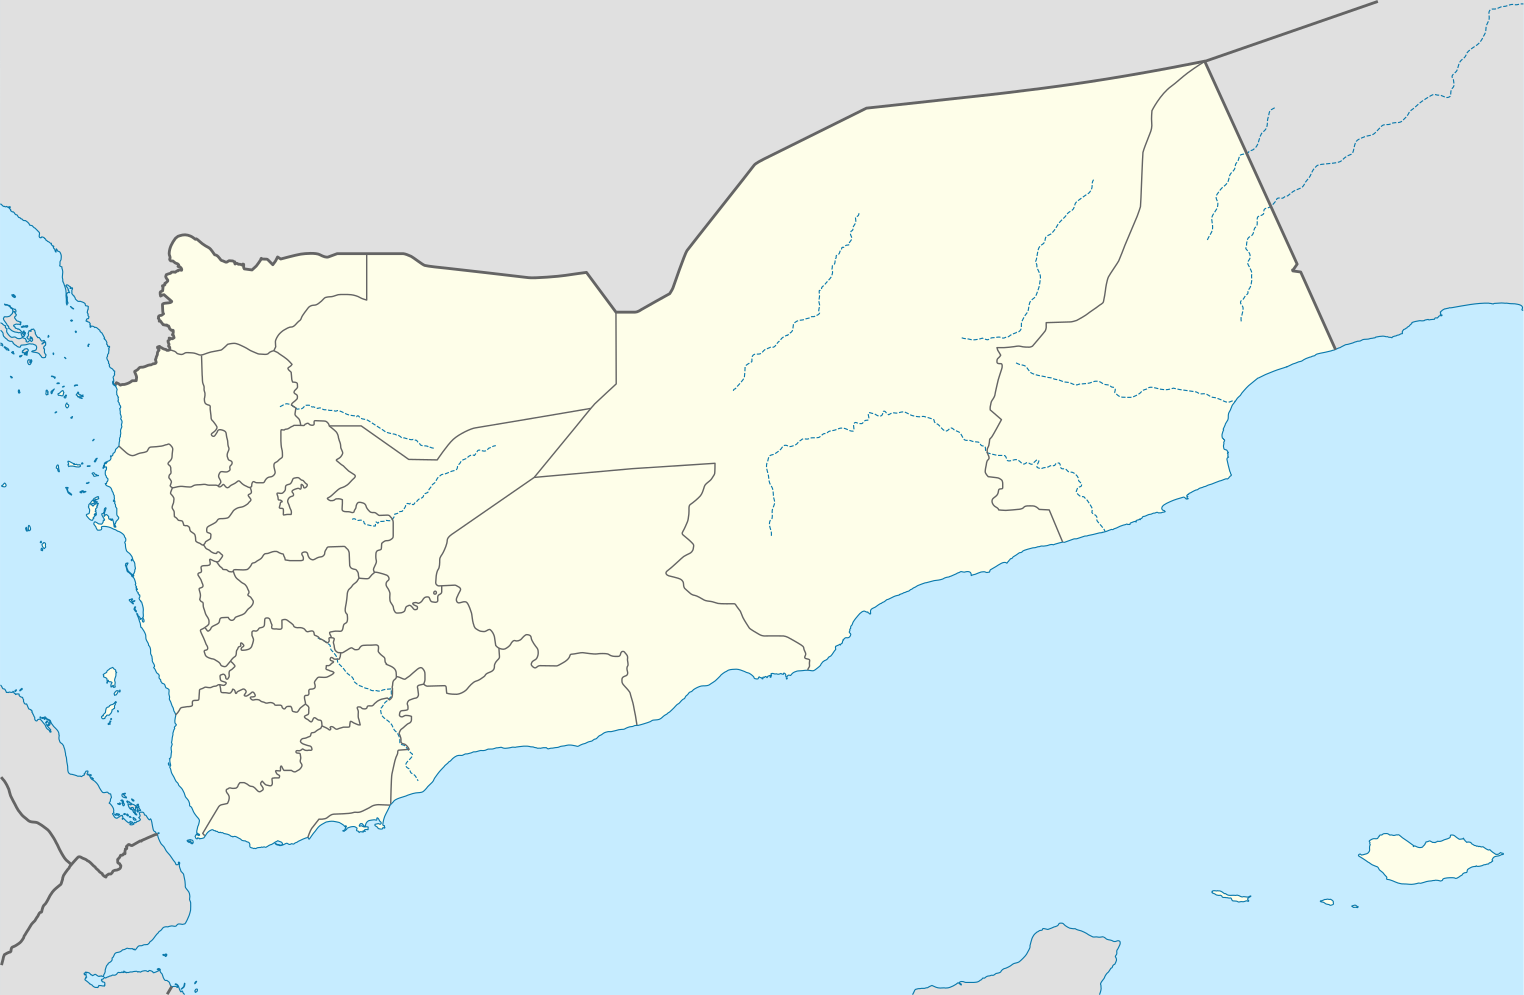 carte du Yémen